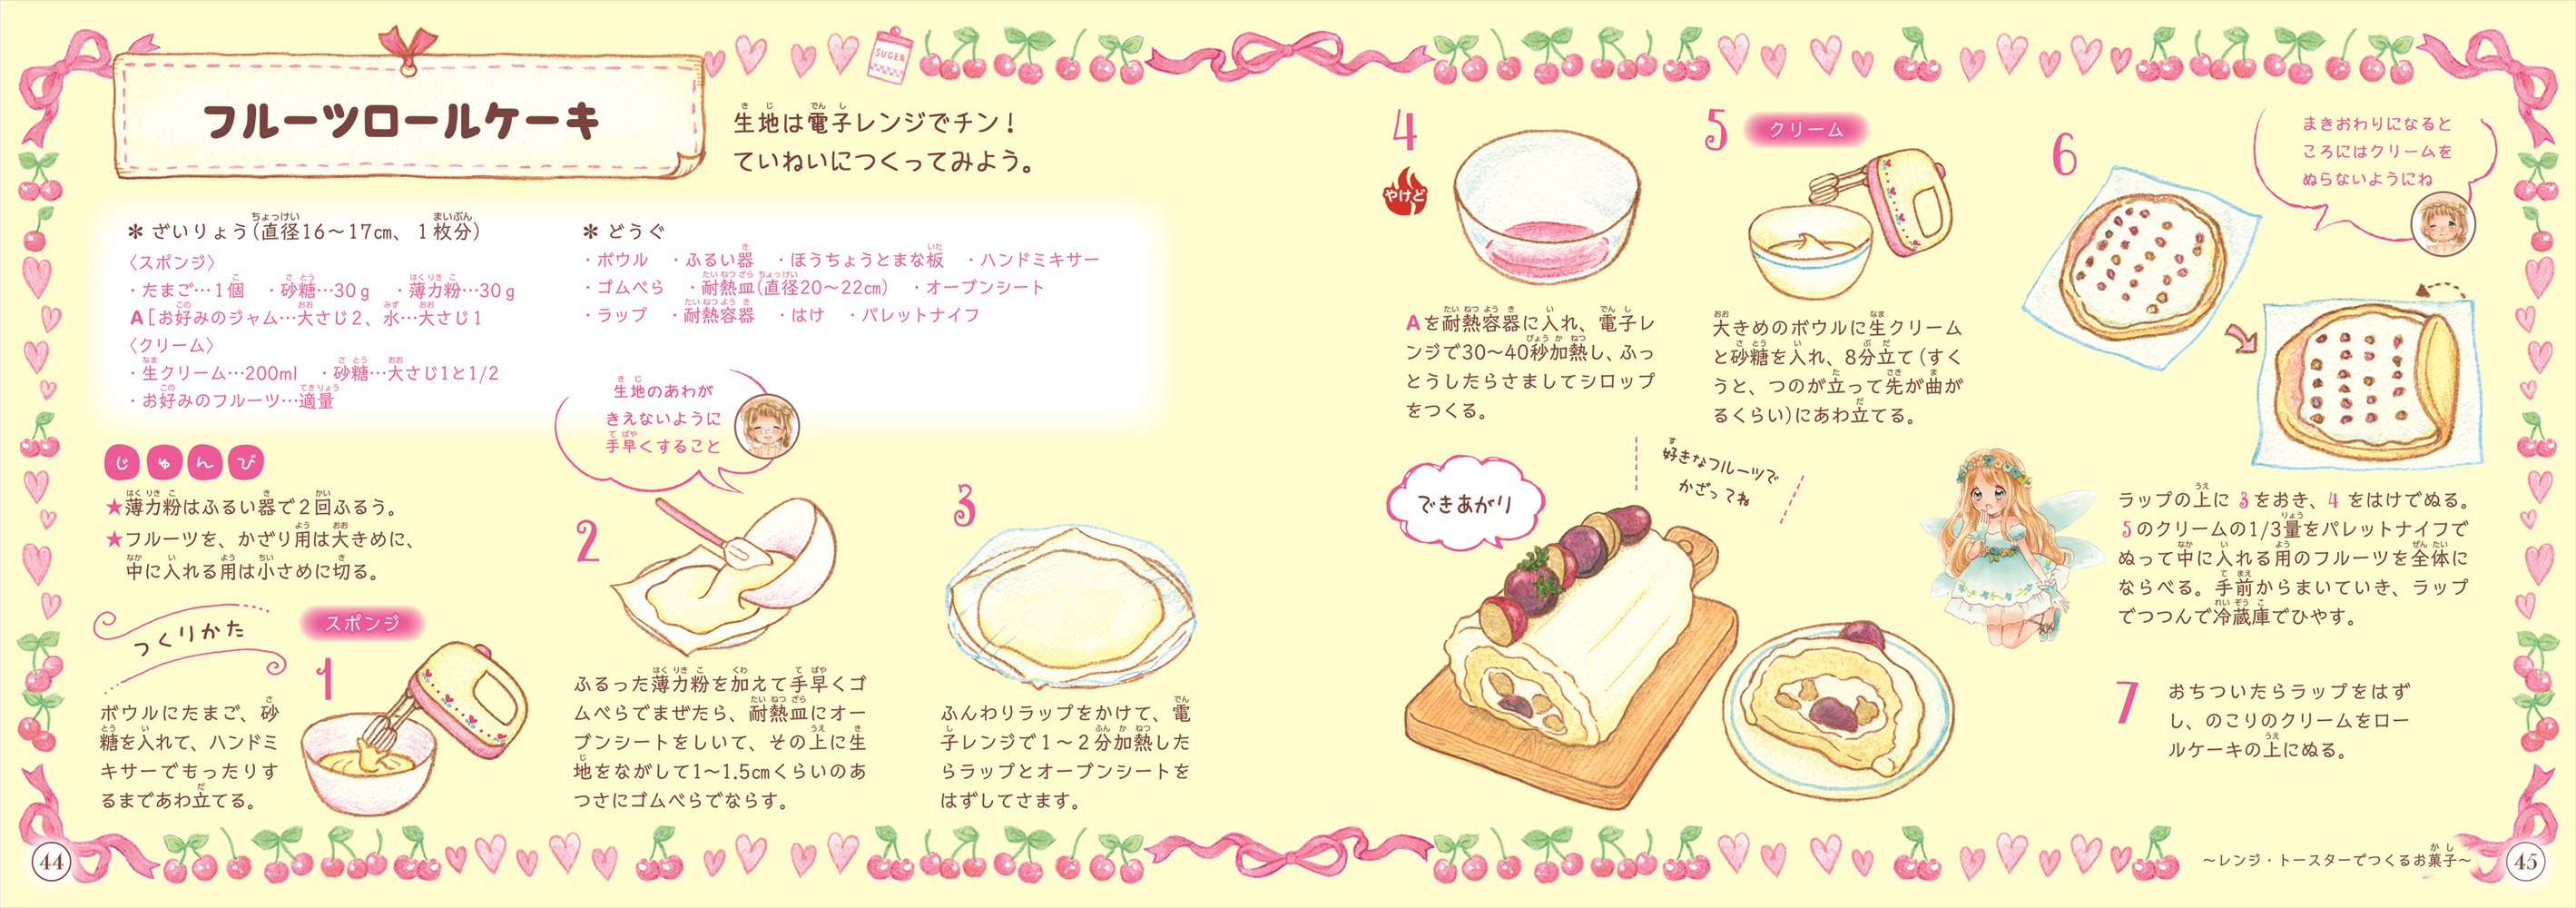 とびきりかわいいお菓子のレシピノート ナツメ社